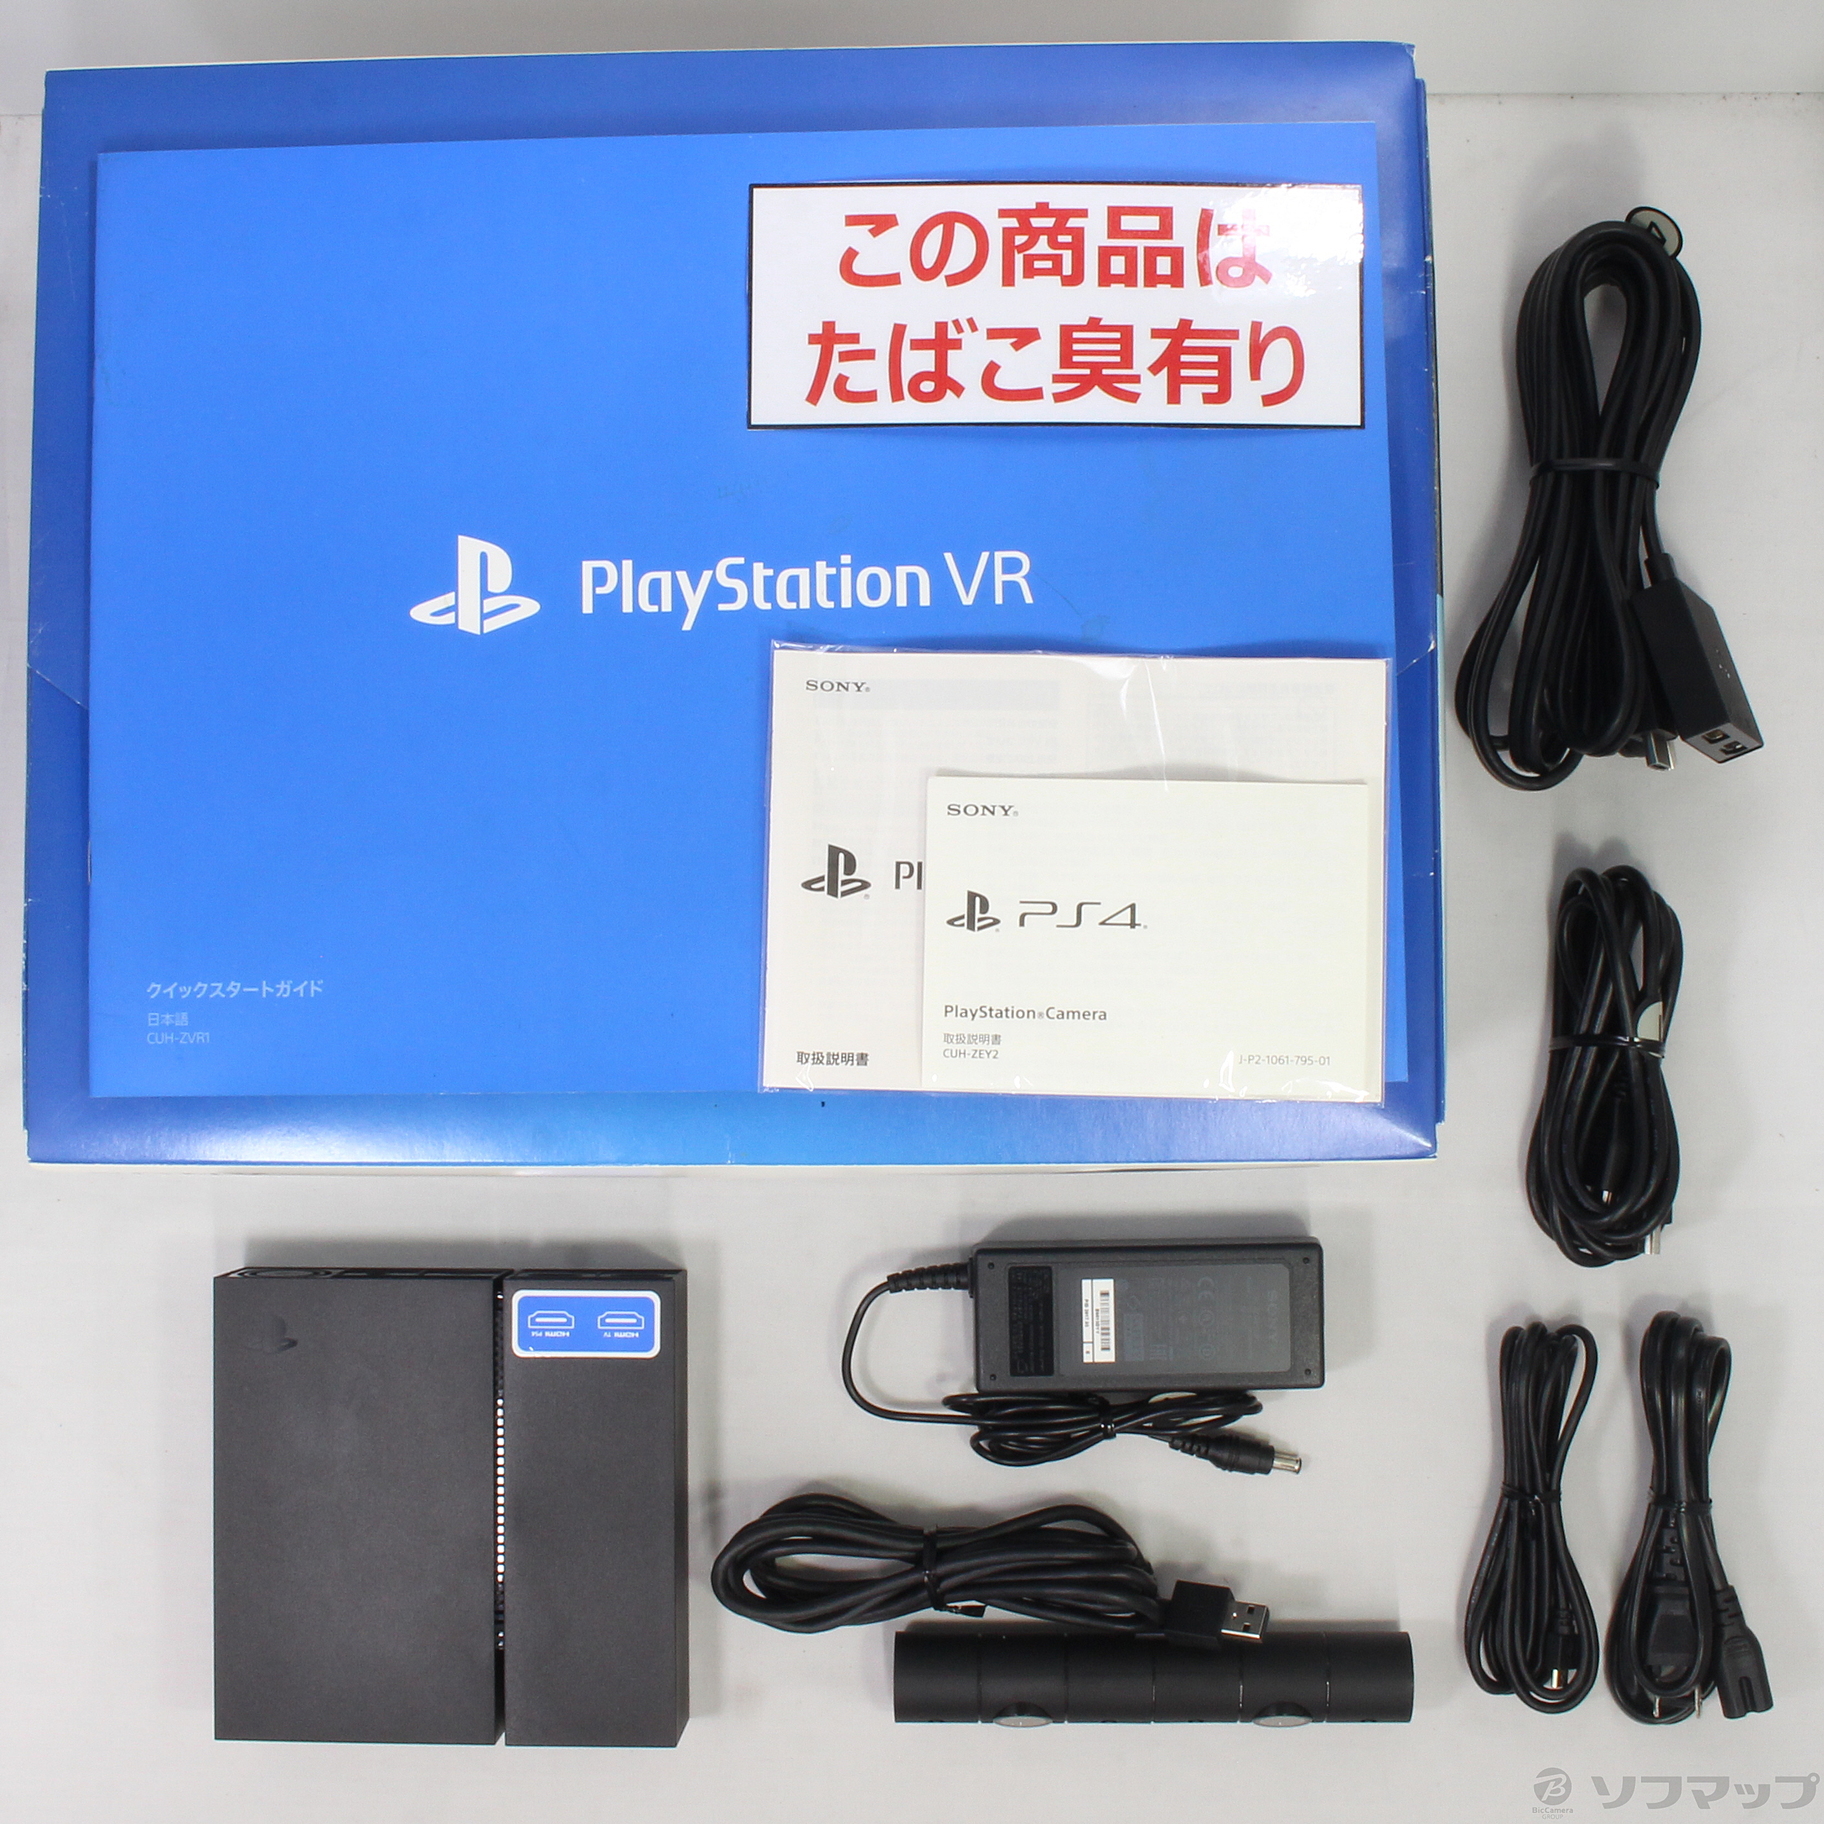 まささま用PSVR CUH-ZVR1 PlayStation Camera同梱